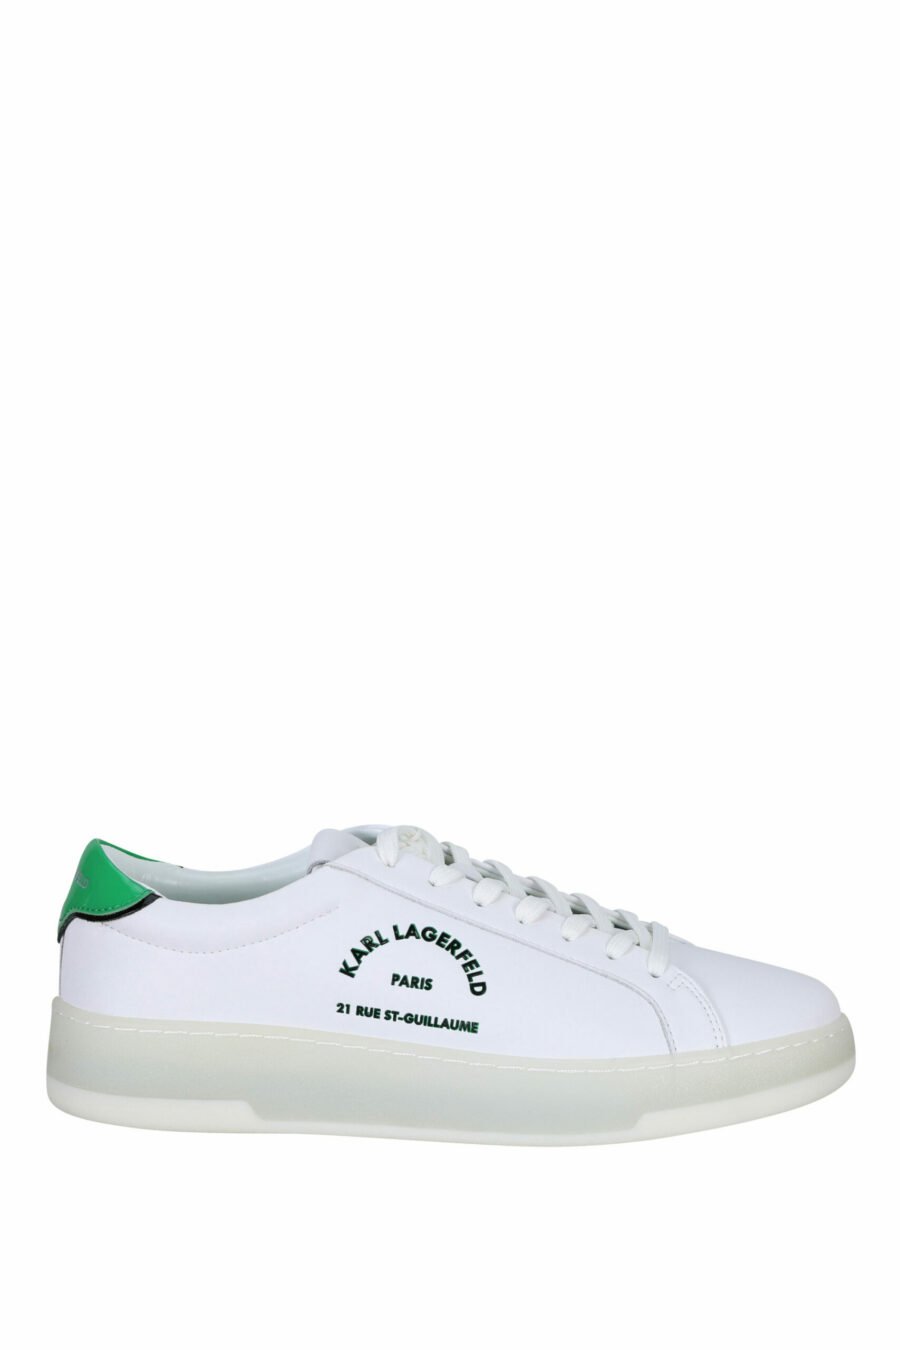 Zapatillas blancas con detalle verde y logo "st rue guillaume" - 5059529291289 scaled